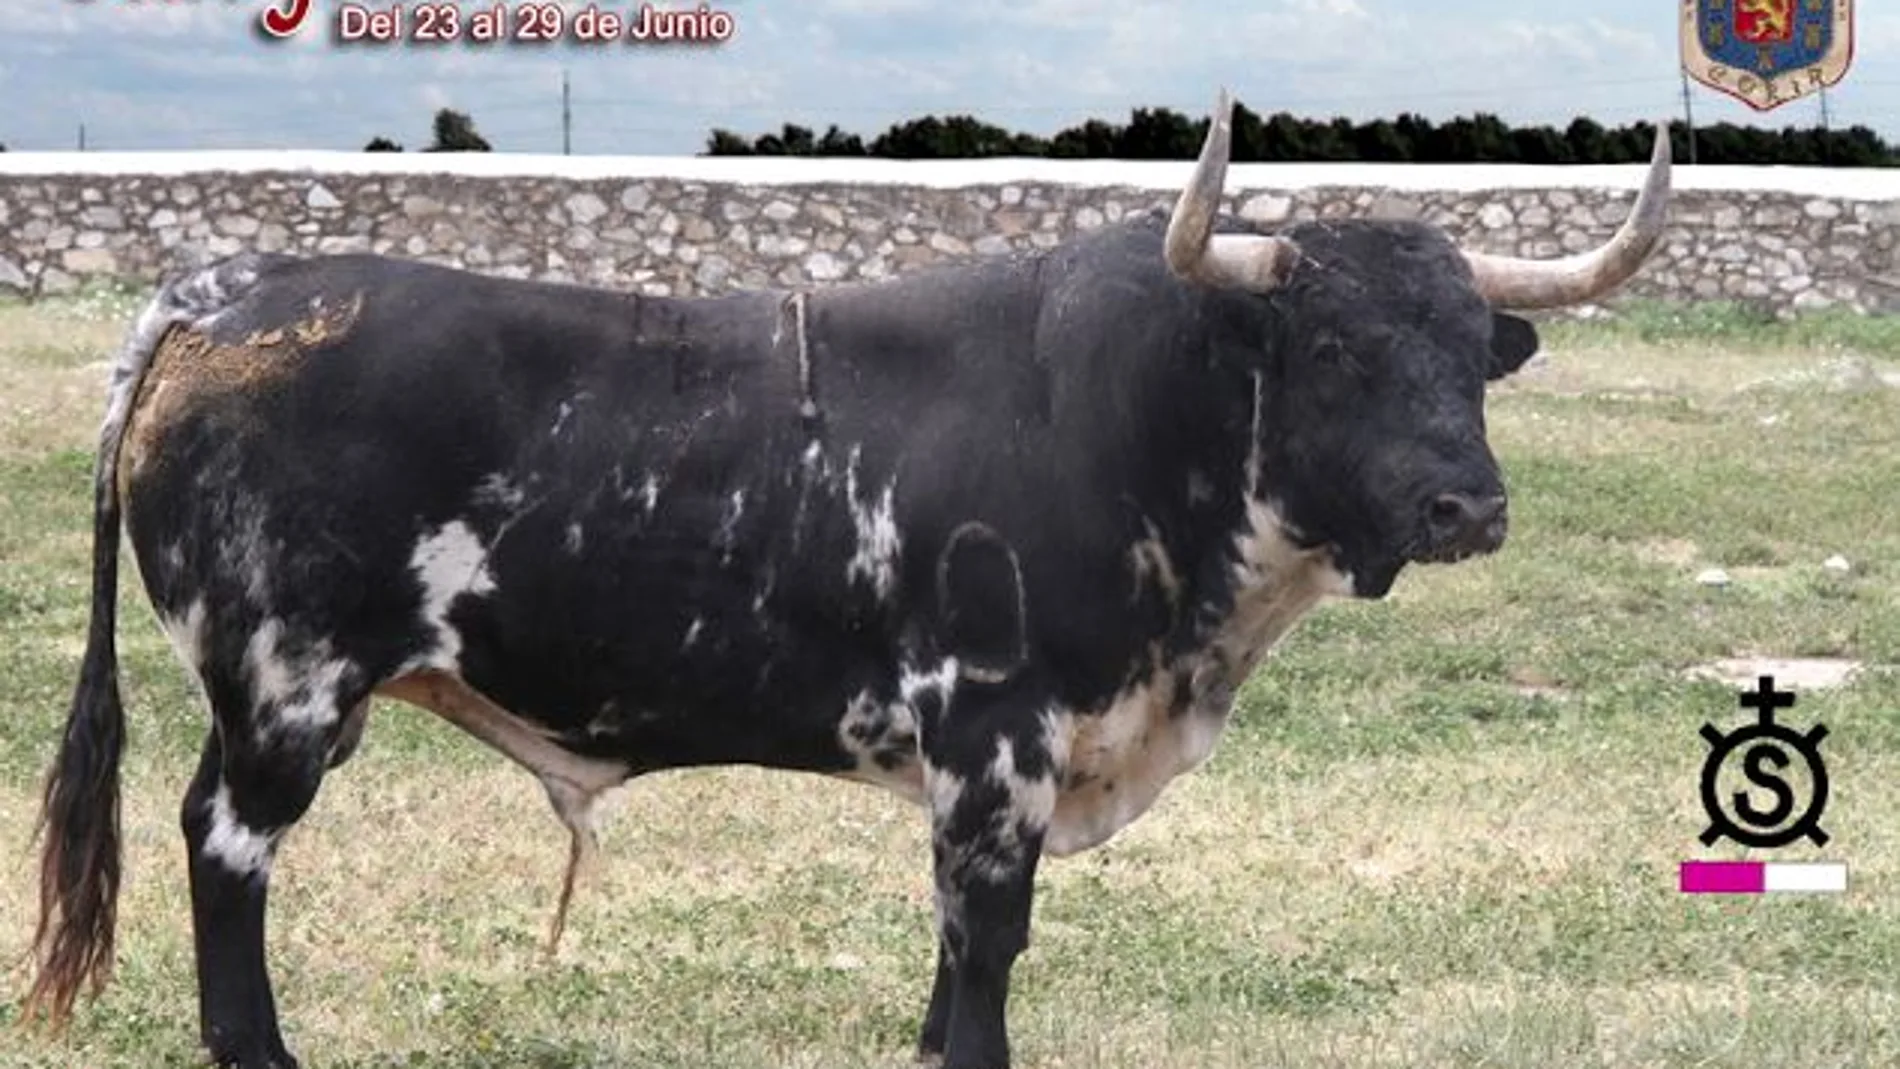 «Guapetón», Toro de San Juan, de la ganadería de Luis Algarra, lidiado en Coria el pasado 24 de junio